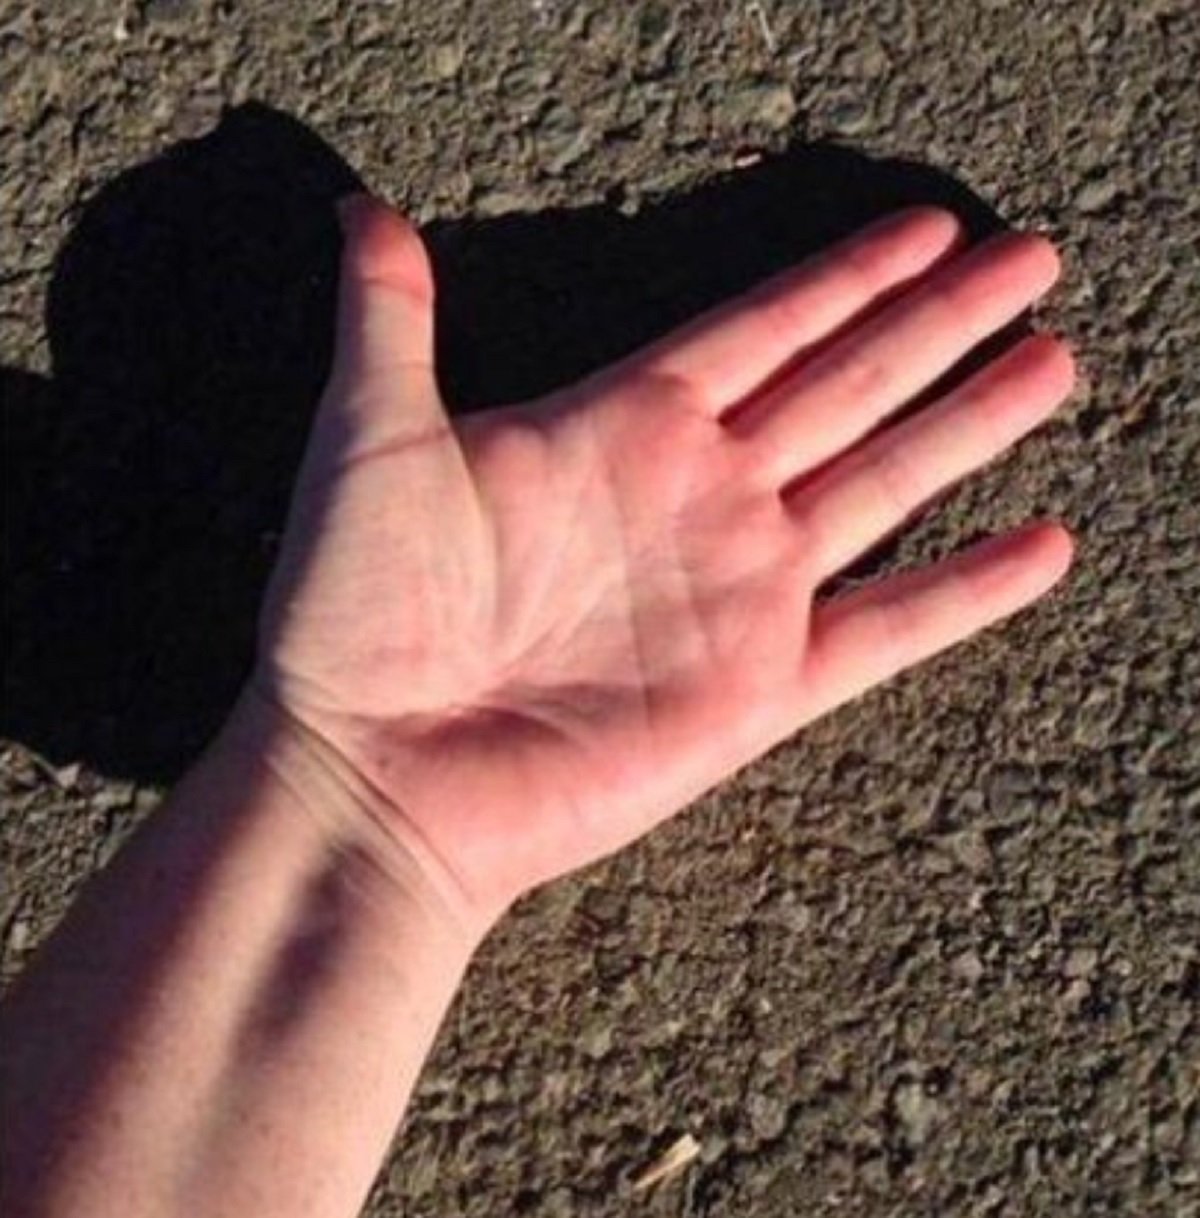 La regla de los cinco segundos consiste en poner la mano al revés sobre el asfalto / Foto: Guardia Civil